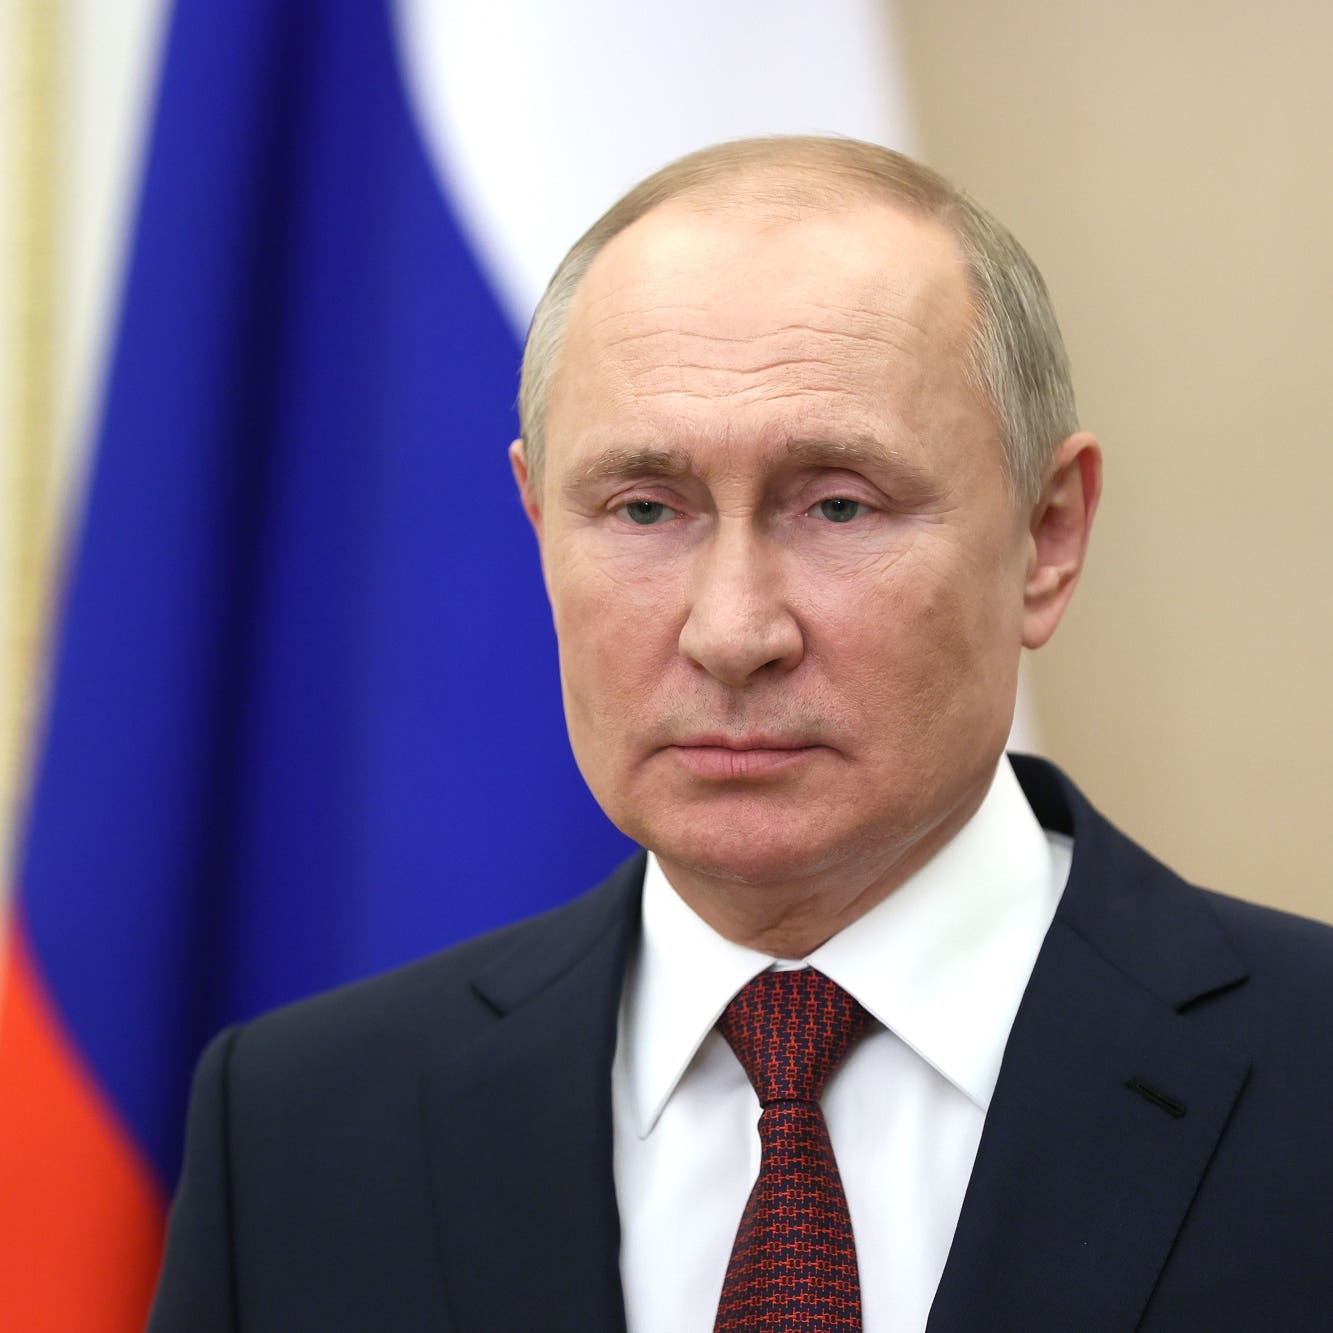 بوتين: روسيا غير مسؤولة عن ارتفاع أسعار الغاز في أوروبا